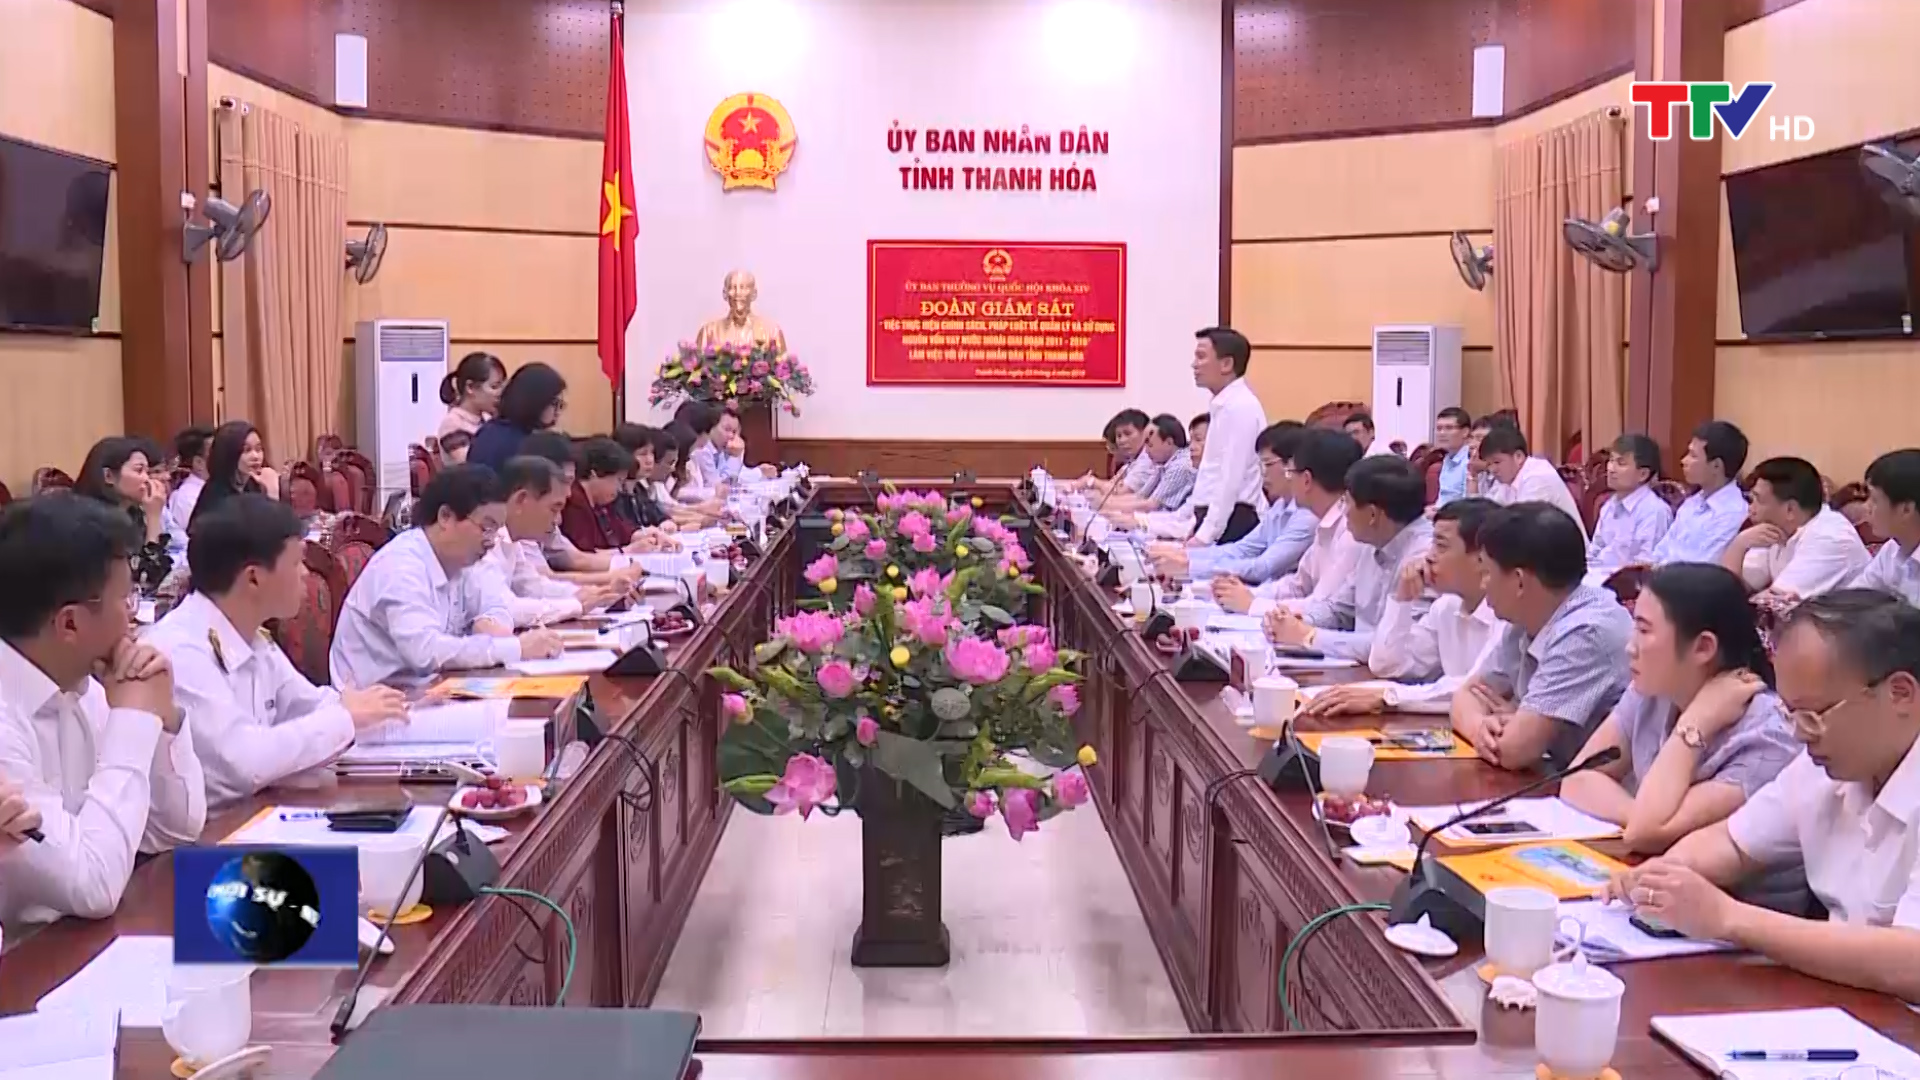 Đoàn giám sát của Ủy ban Thường vụ Quốc hội, đã có buổi làm việc với tỉnh Thanh Hóa về việc thực hiện chính sách, pháp luật về quản lý và sử dụng nguồn vốn vay nước ngoài giai đoạn 2011-2016.